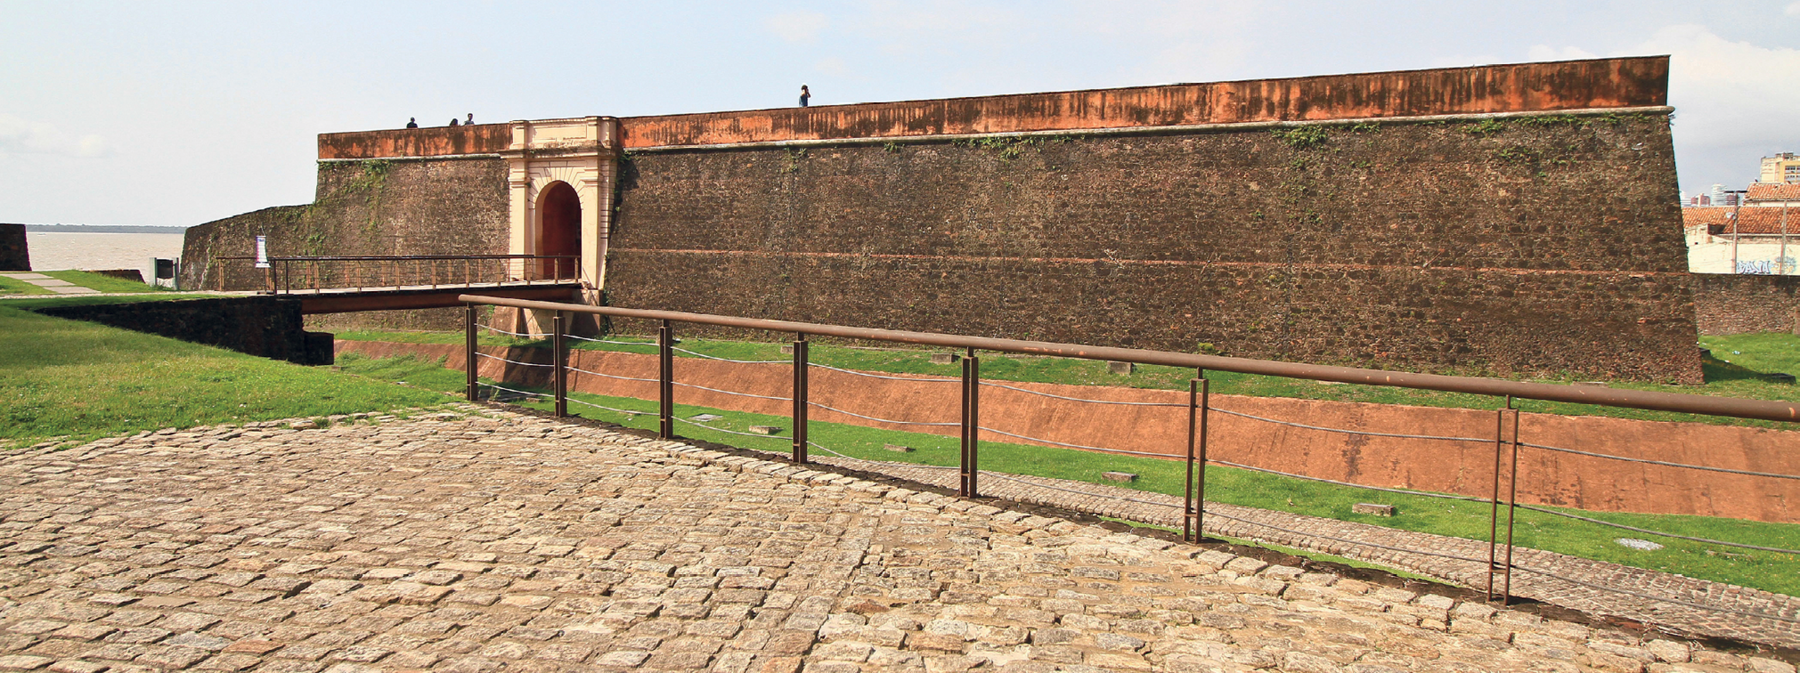 Fotografia. Vista de frente da parede de pedras de um forte. O forte tem uma porta de entrada que pode ser acessada por meio de uma ponte de madeira.